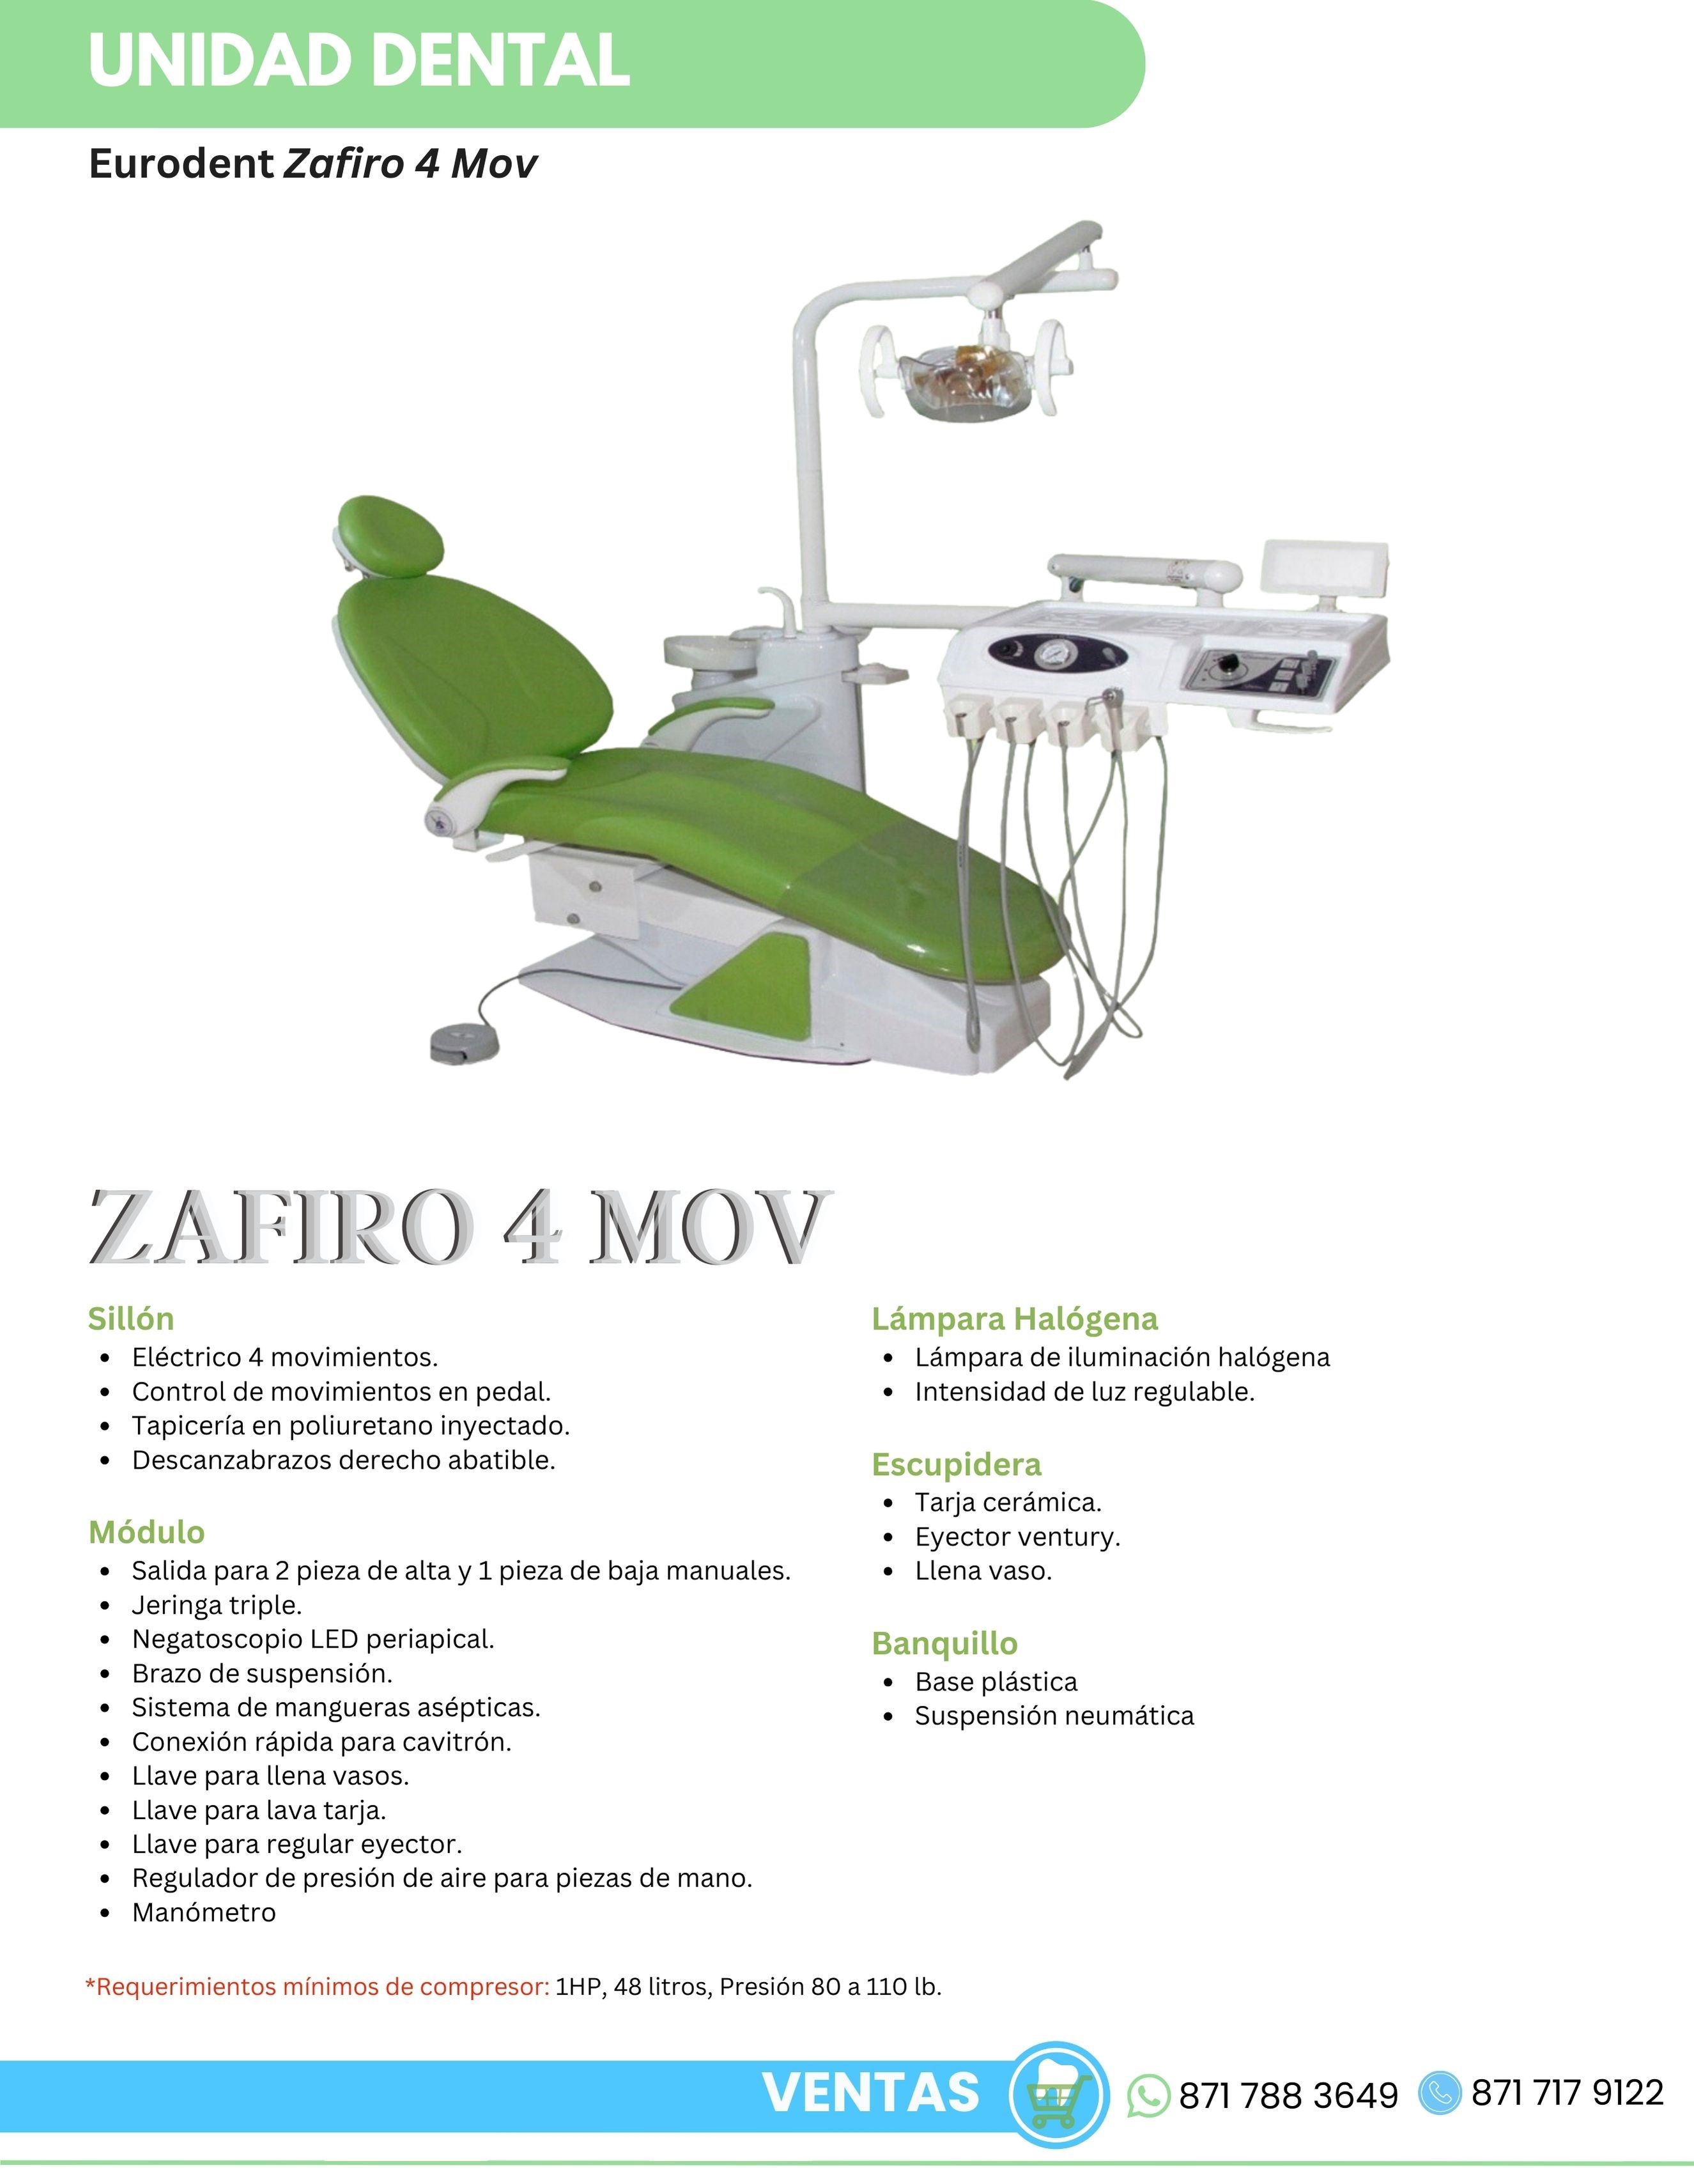 Catálogo Unidad Dental Zafiro 4 Mov Eurodent Orthosign 